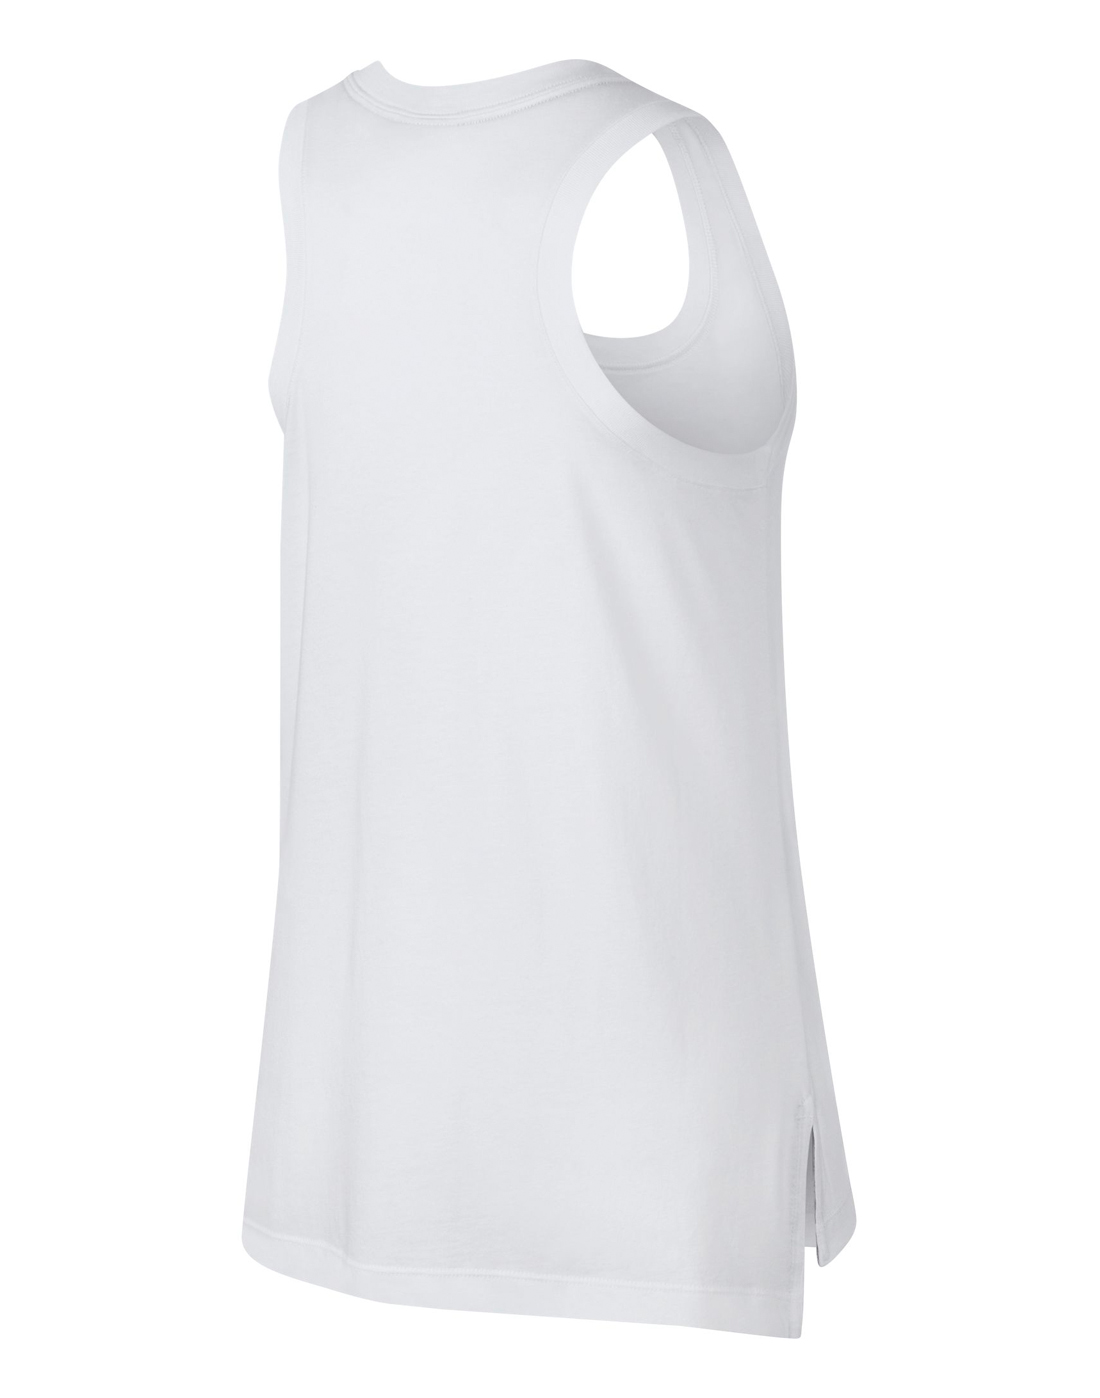 Nike Womens Logo Futura Tank - White | Life Style Sports IE